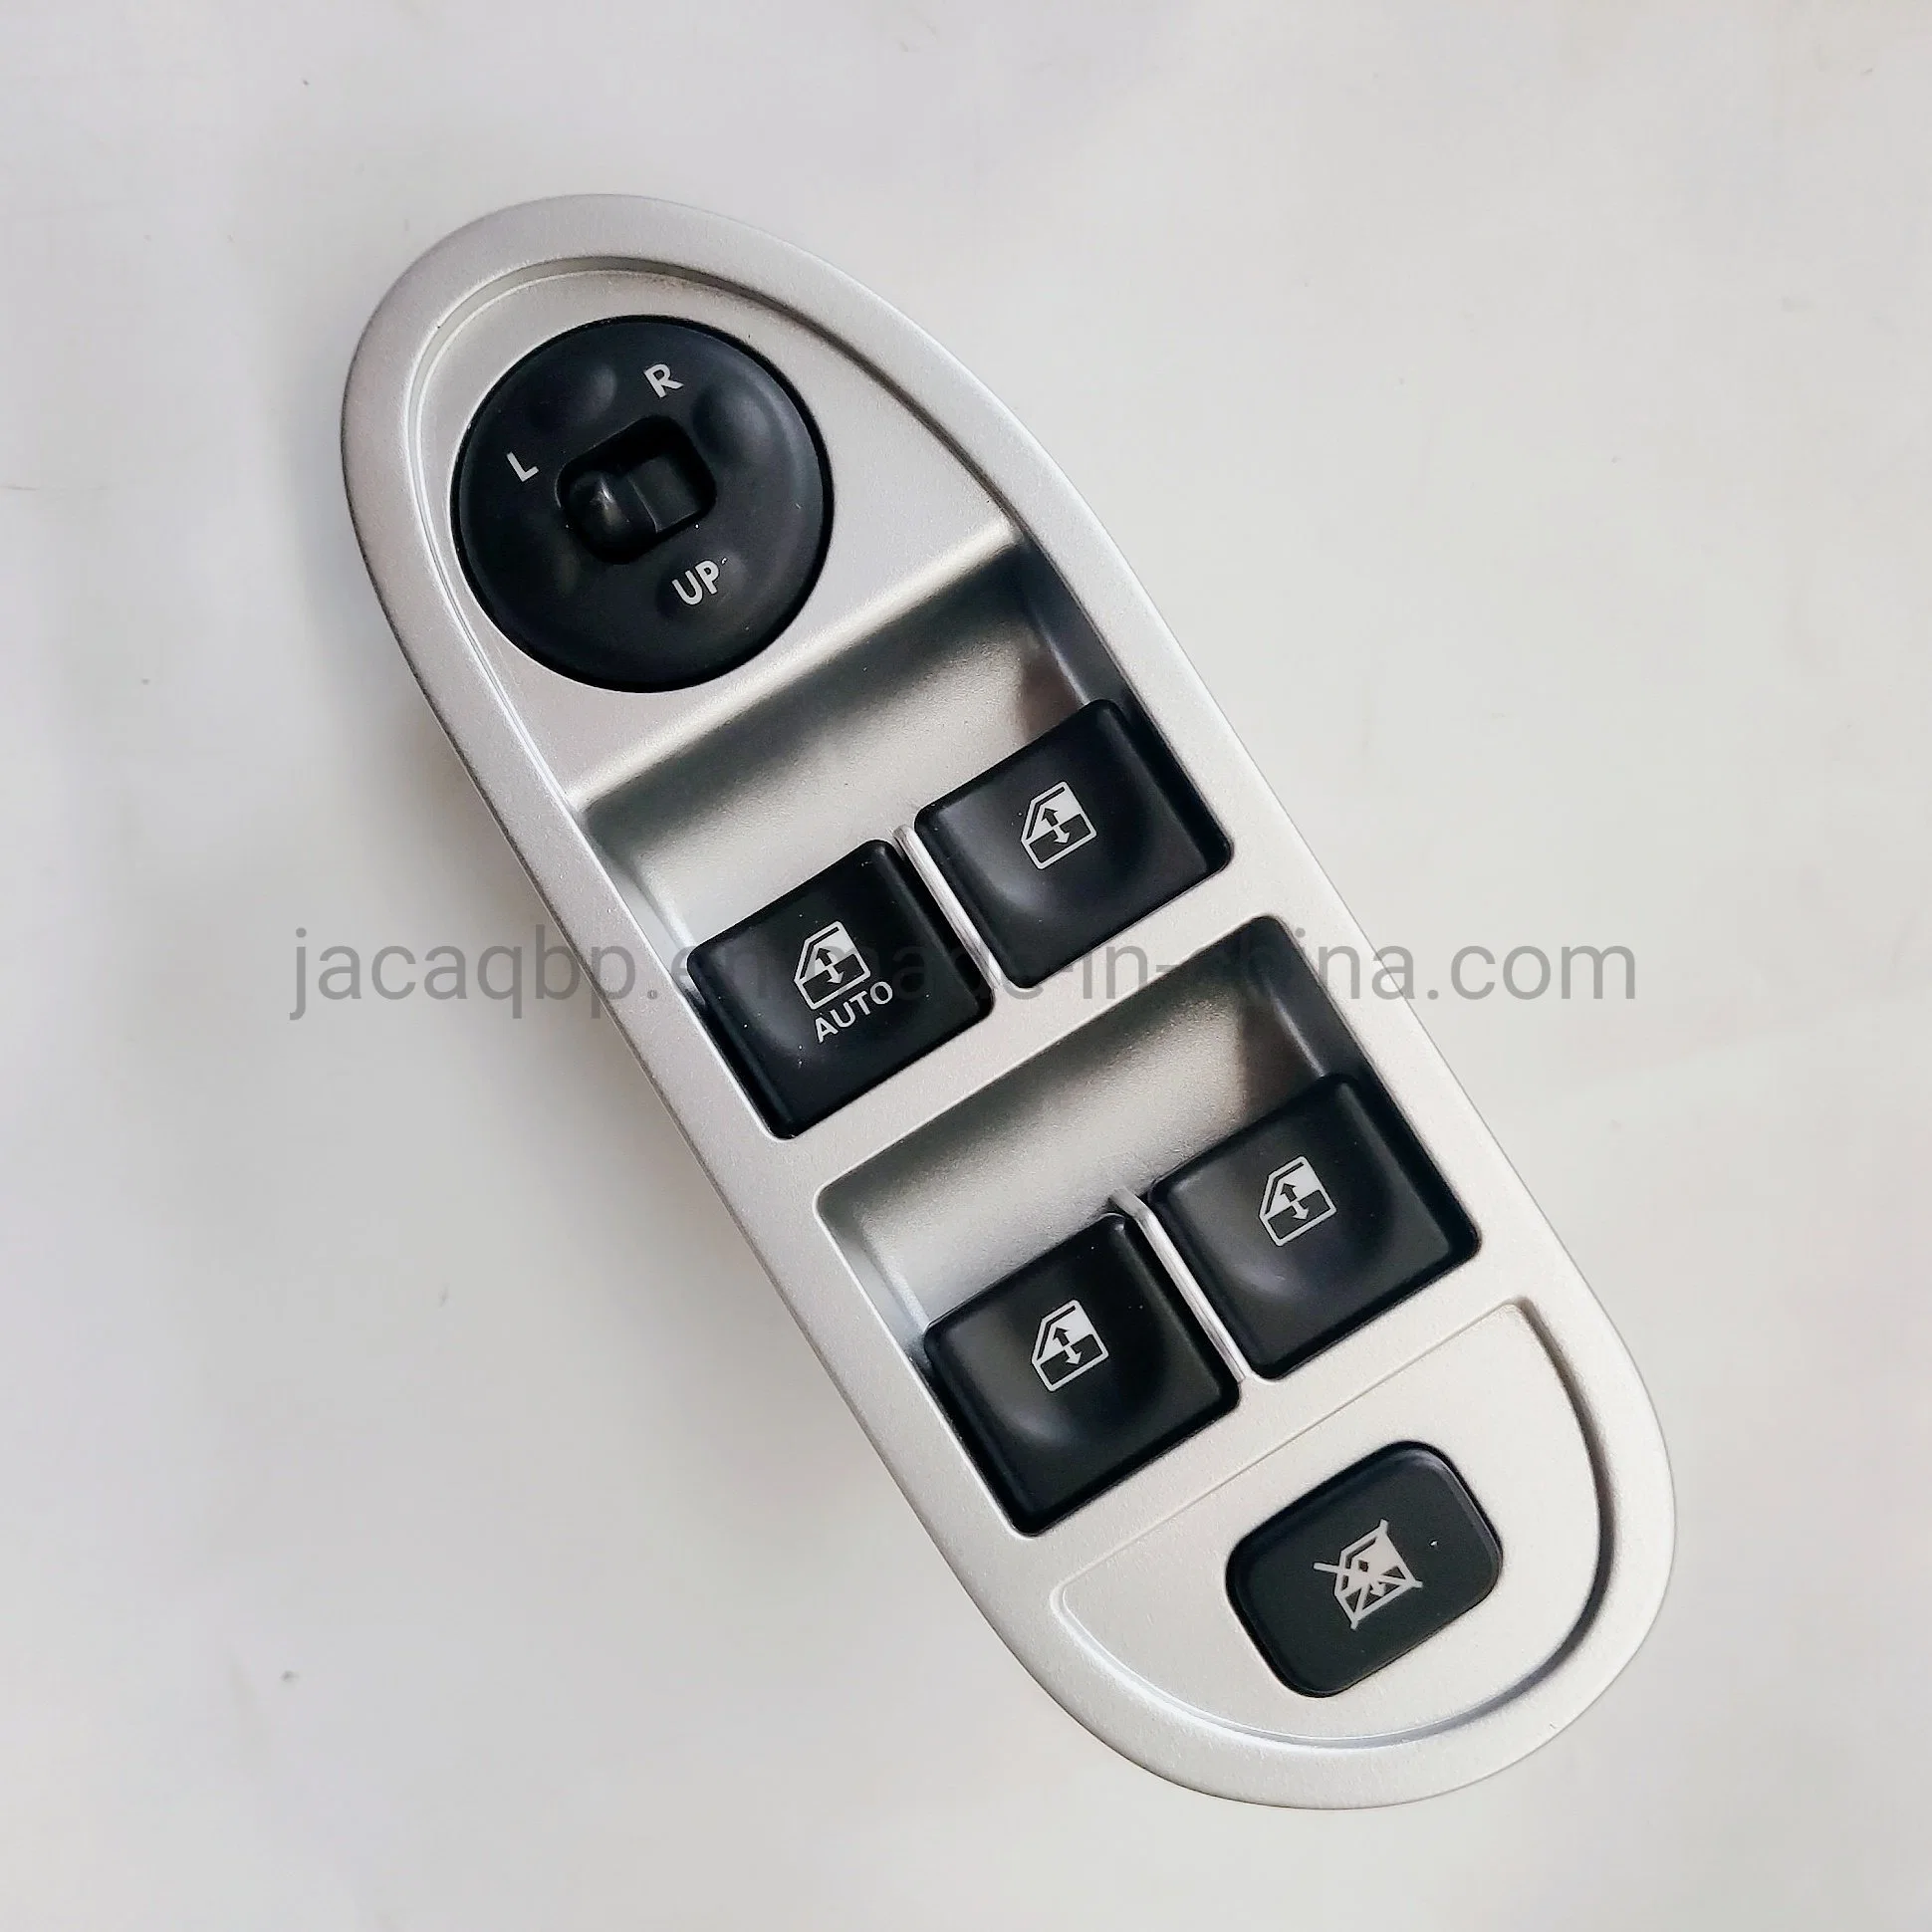 Автомобильных запчастей Windows переключатель управления для ОКК J3 левый передний переключатель подъемника